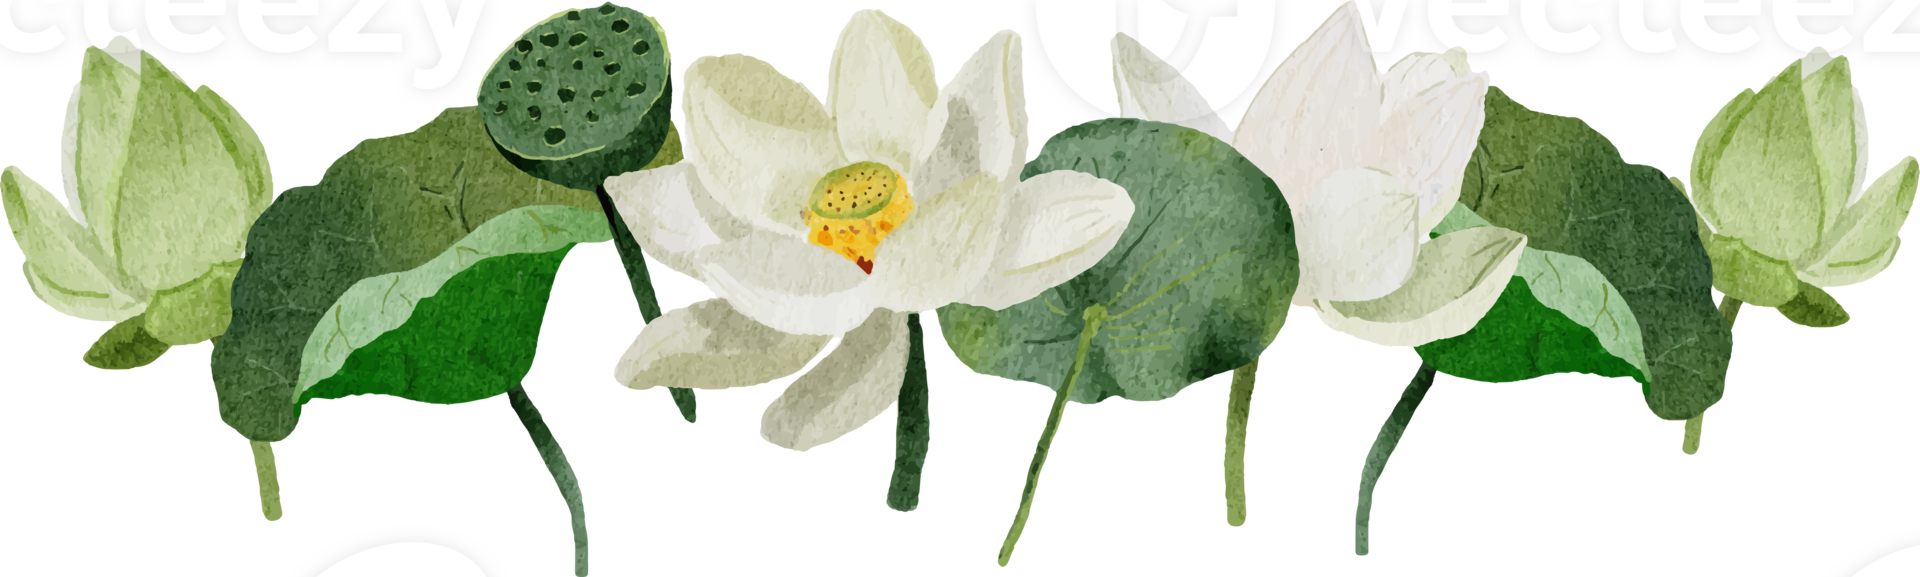 aquarelle blanc lotus fleur bouquet couronne Cadre png